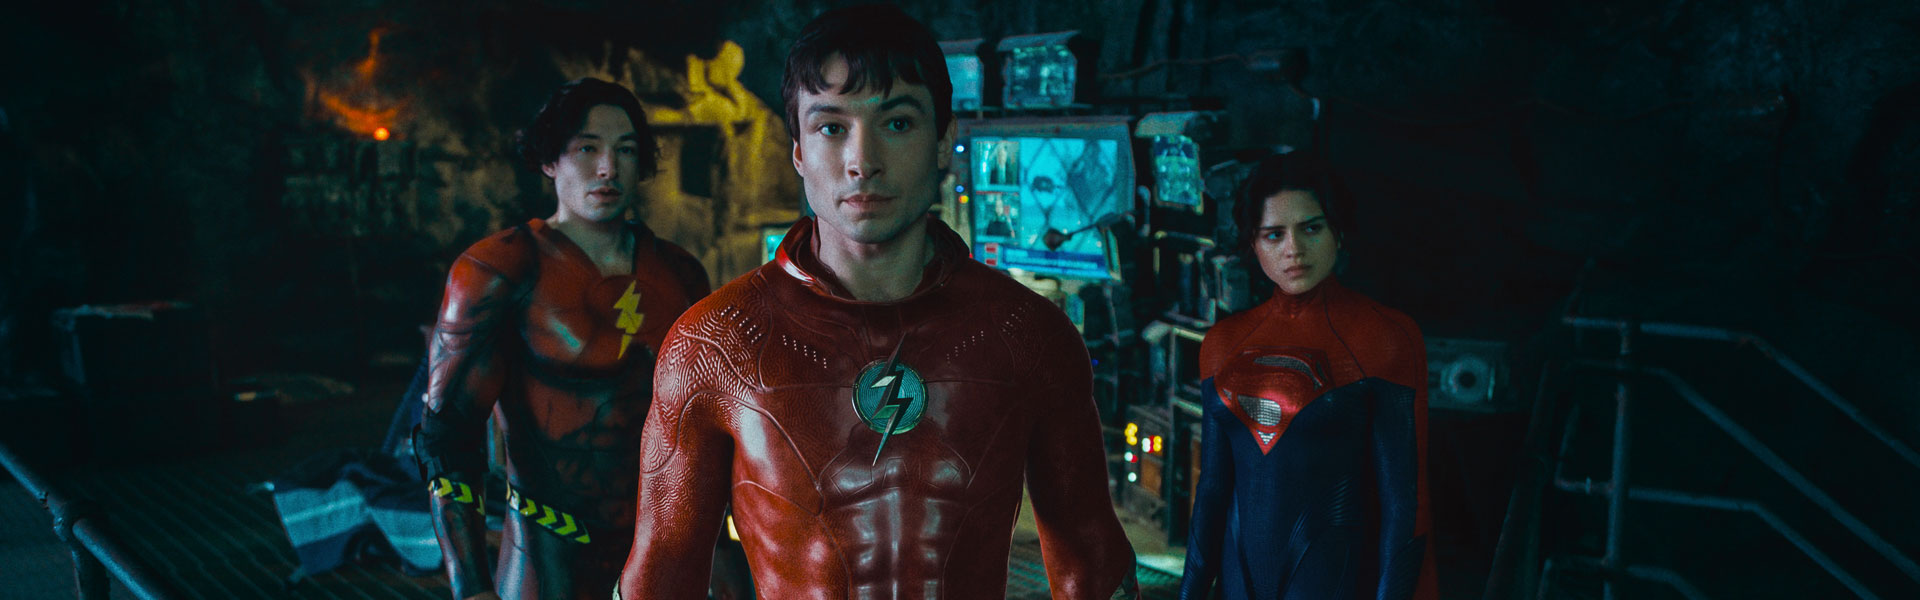 Crítica de ‘The Flash’: filme empolga, porém termina com pouca substância